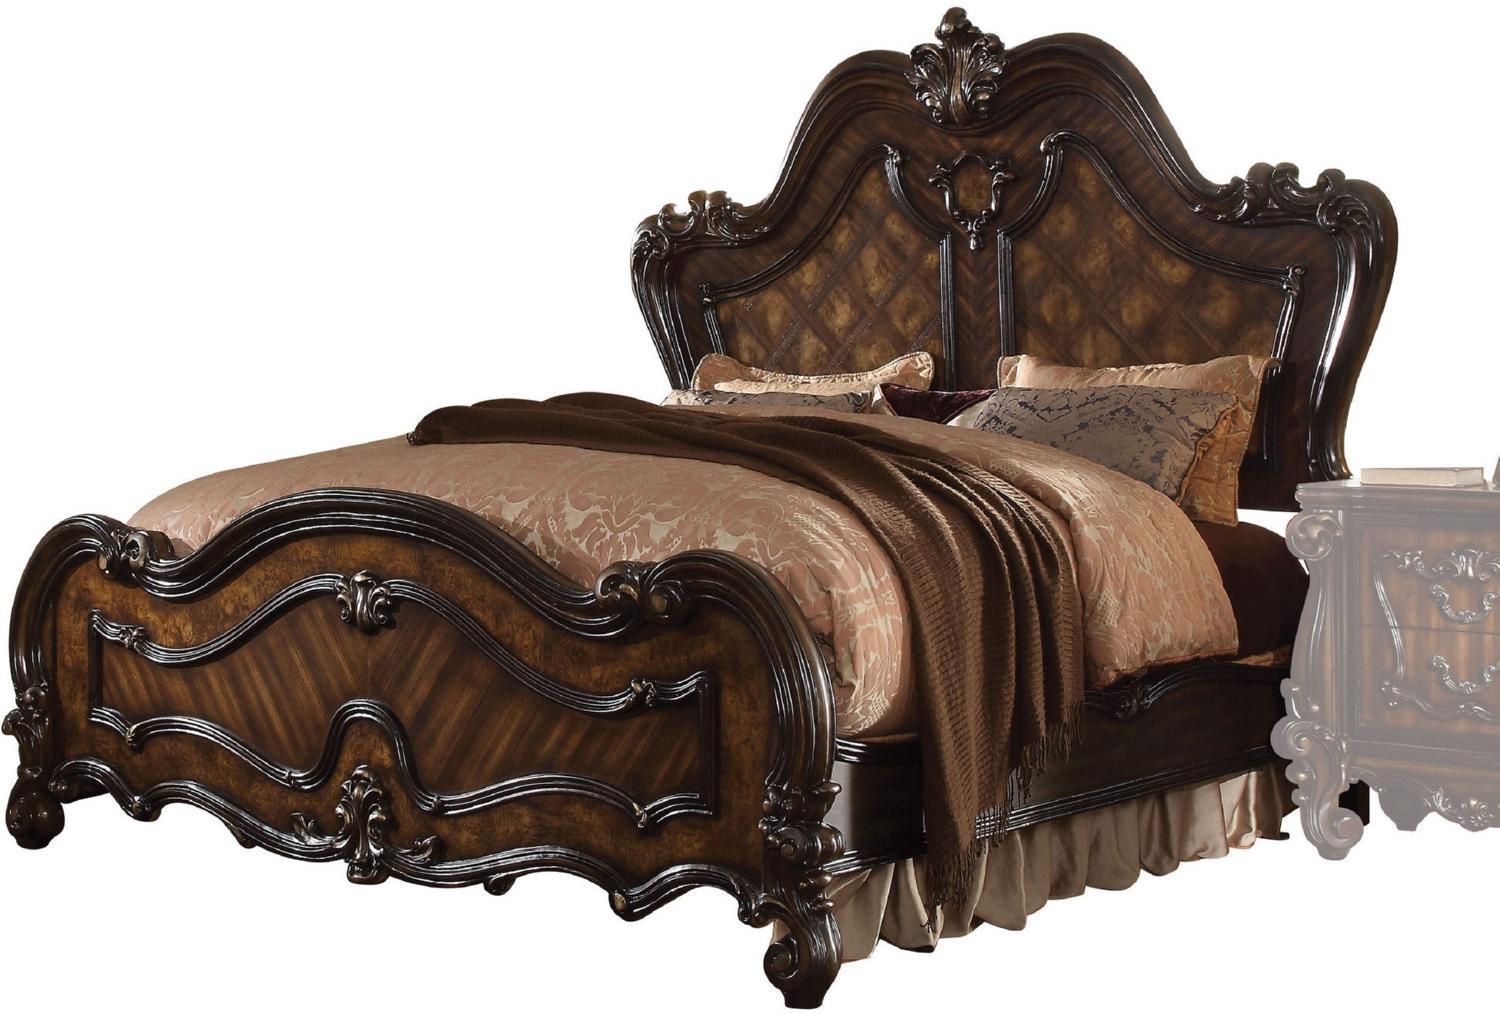 

    
Queenies Cherry Oak Panel Standard Bed Queen Classic
